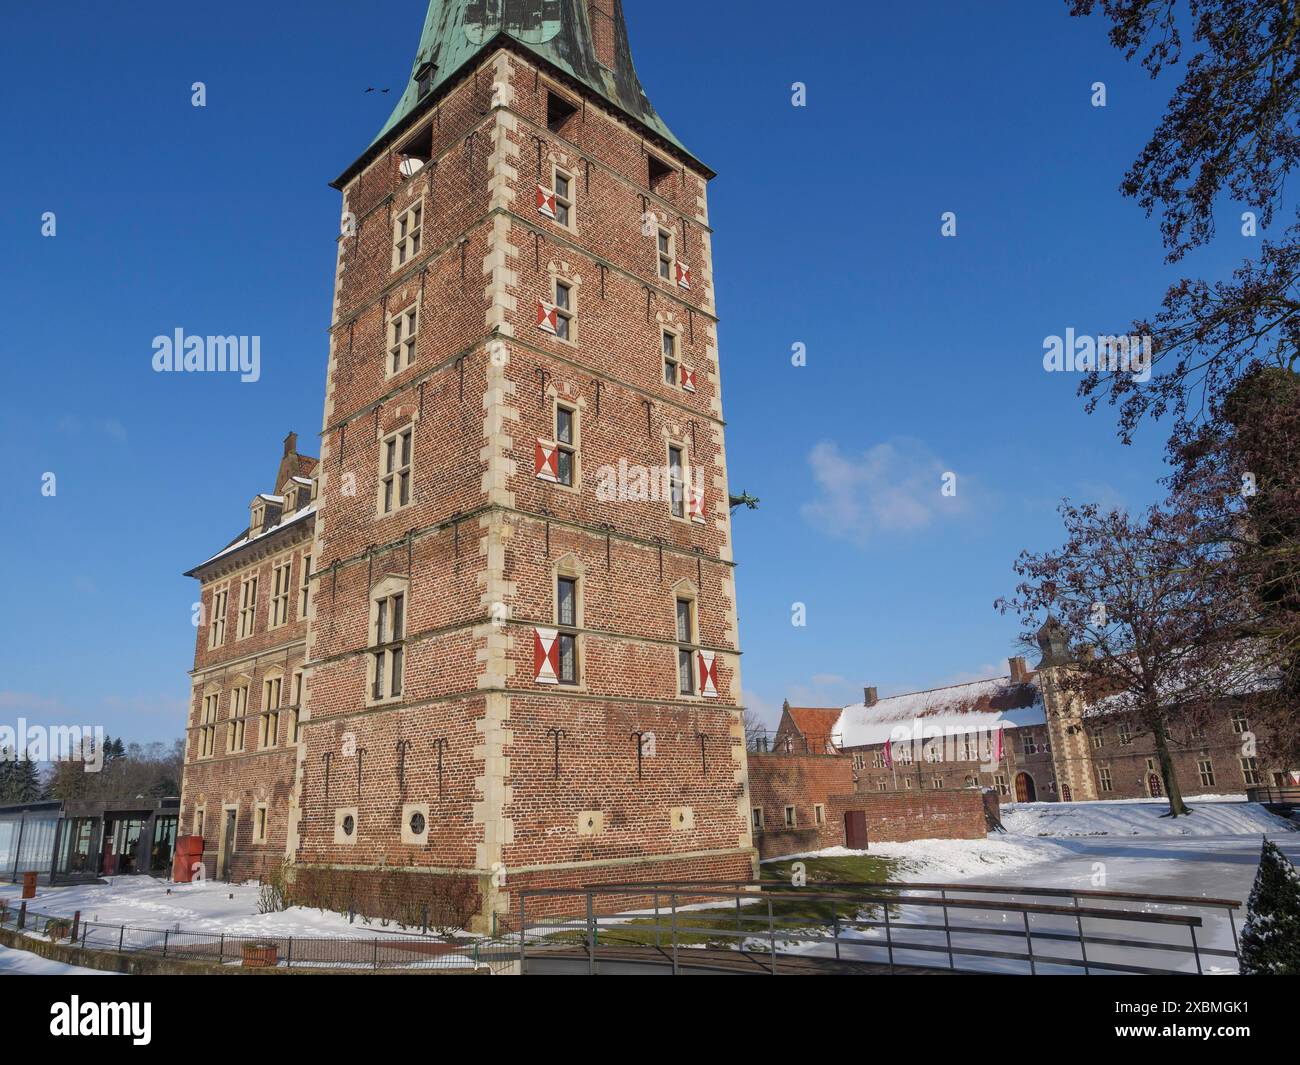 Grande castello in mattoni con torre, circondato da neve e cielo azzurro, tipica atmosfera invernale, Raesfeld, muensterland, germania Foto Stock